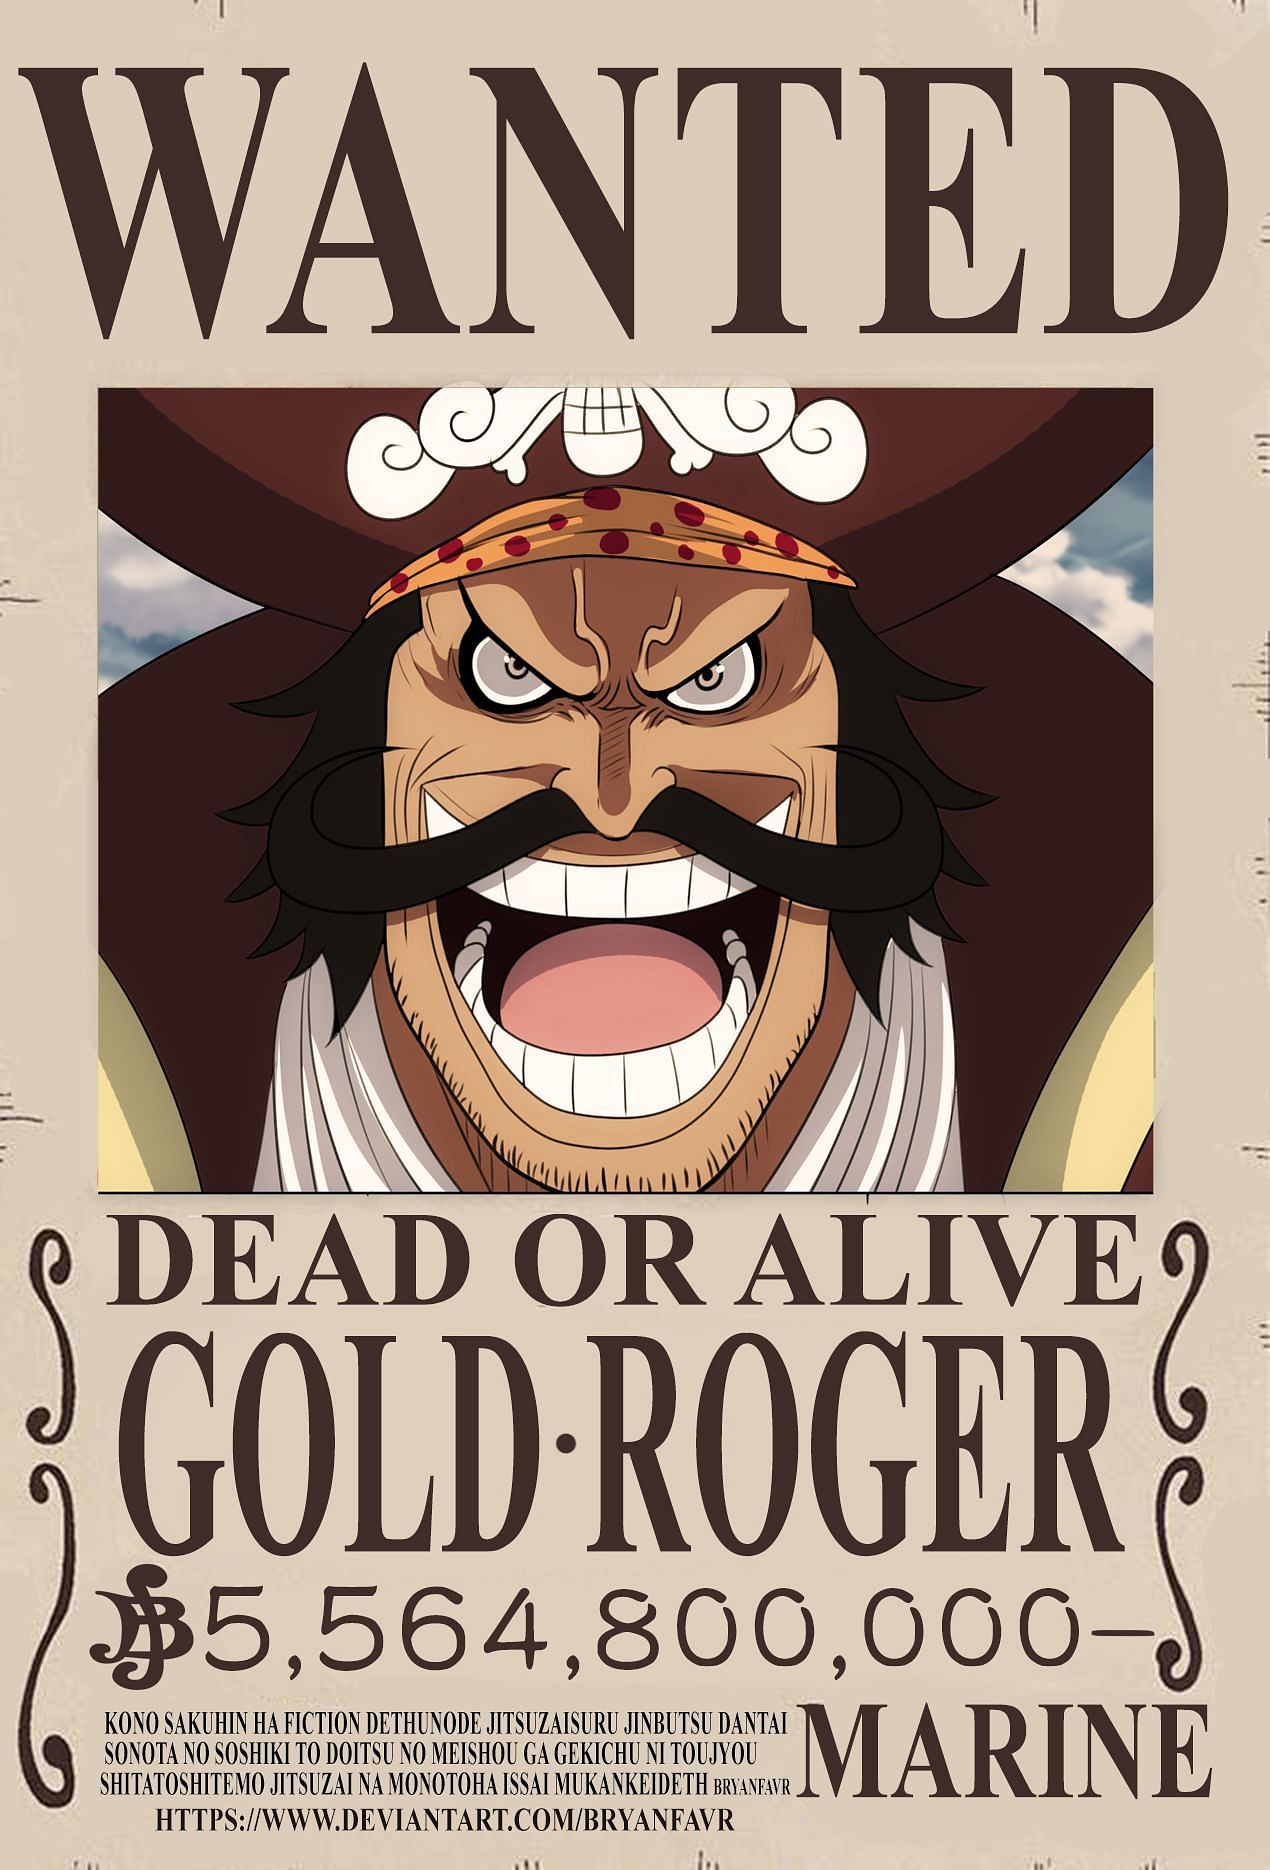 Gold Roger bounty poster (Image via bryanfavr, DeviantArt)